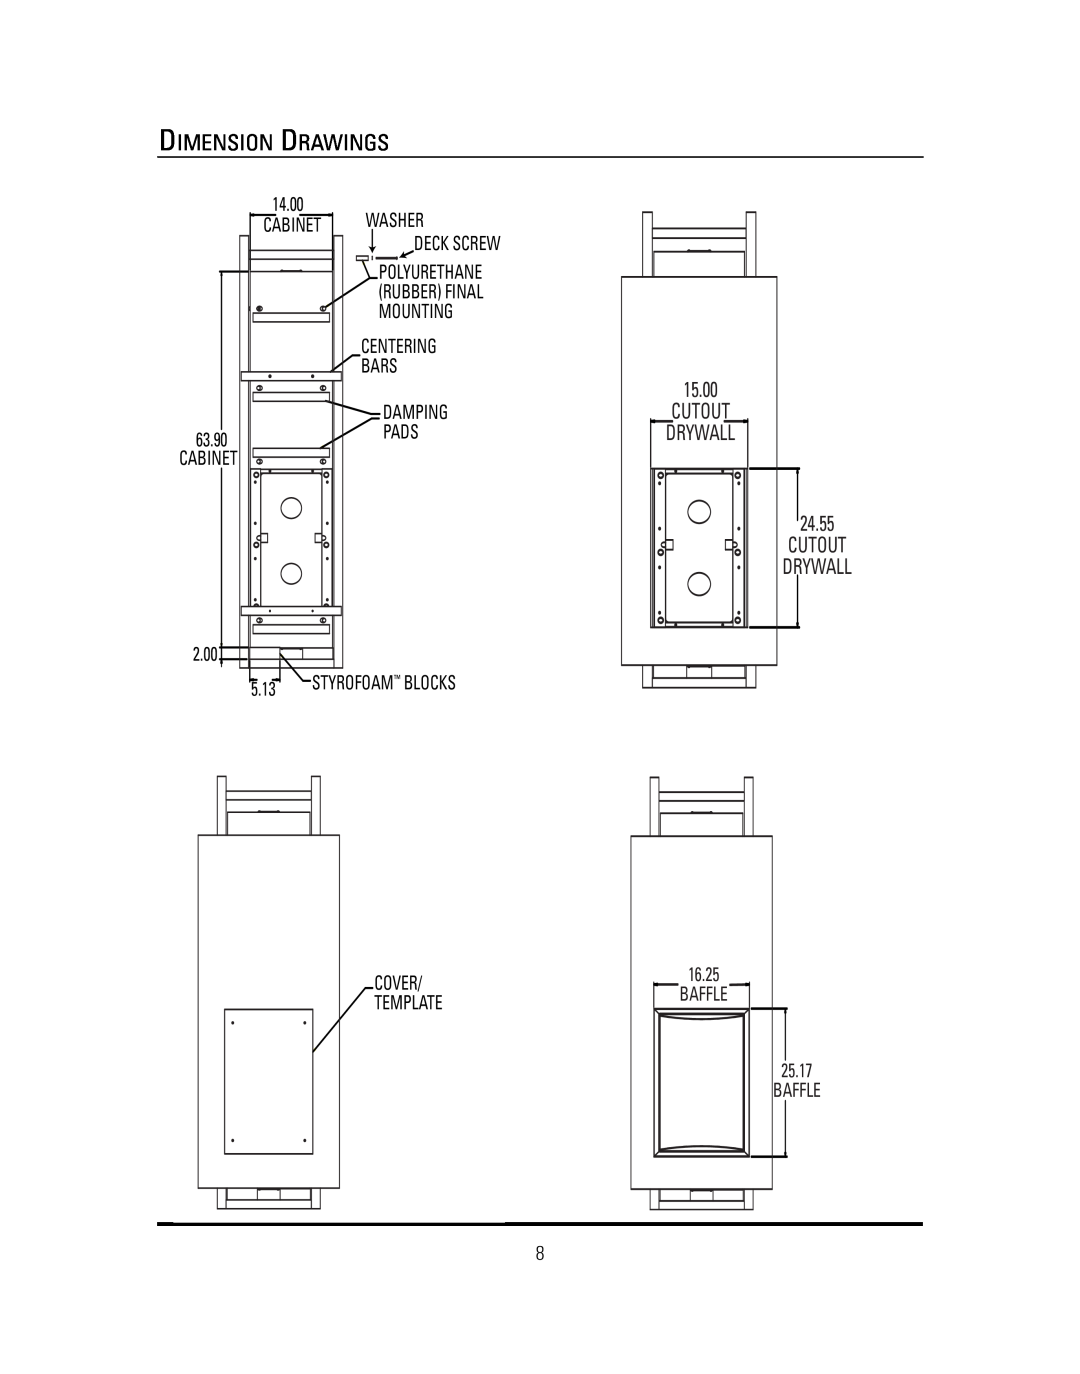 JBL S4S manual Dimension Drawings, Cutout Drywall 